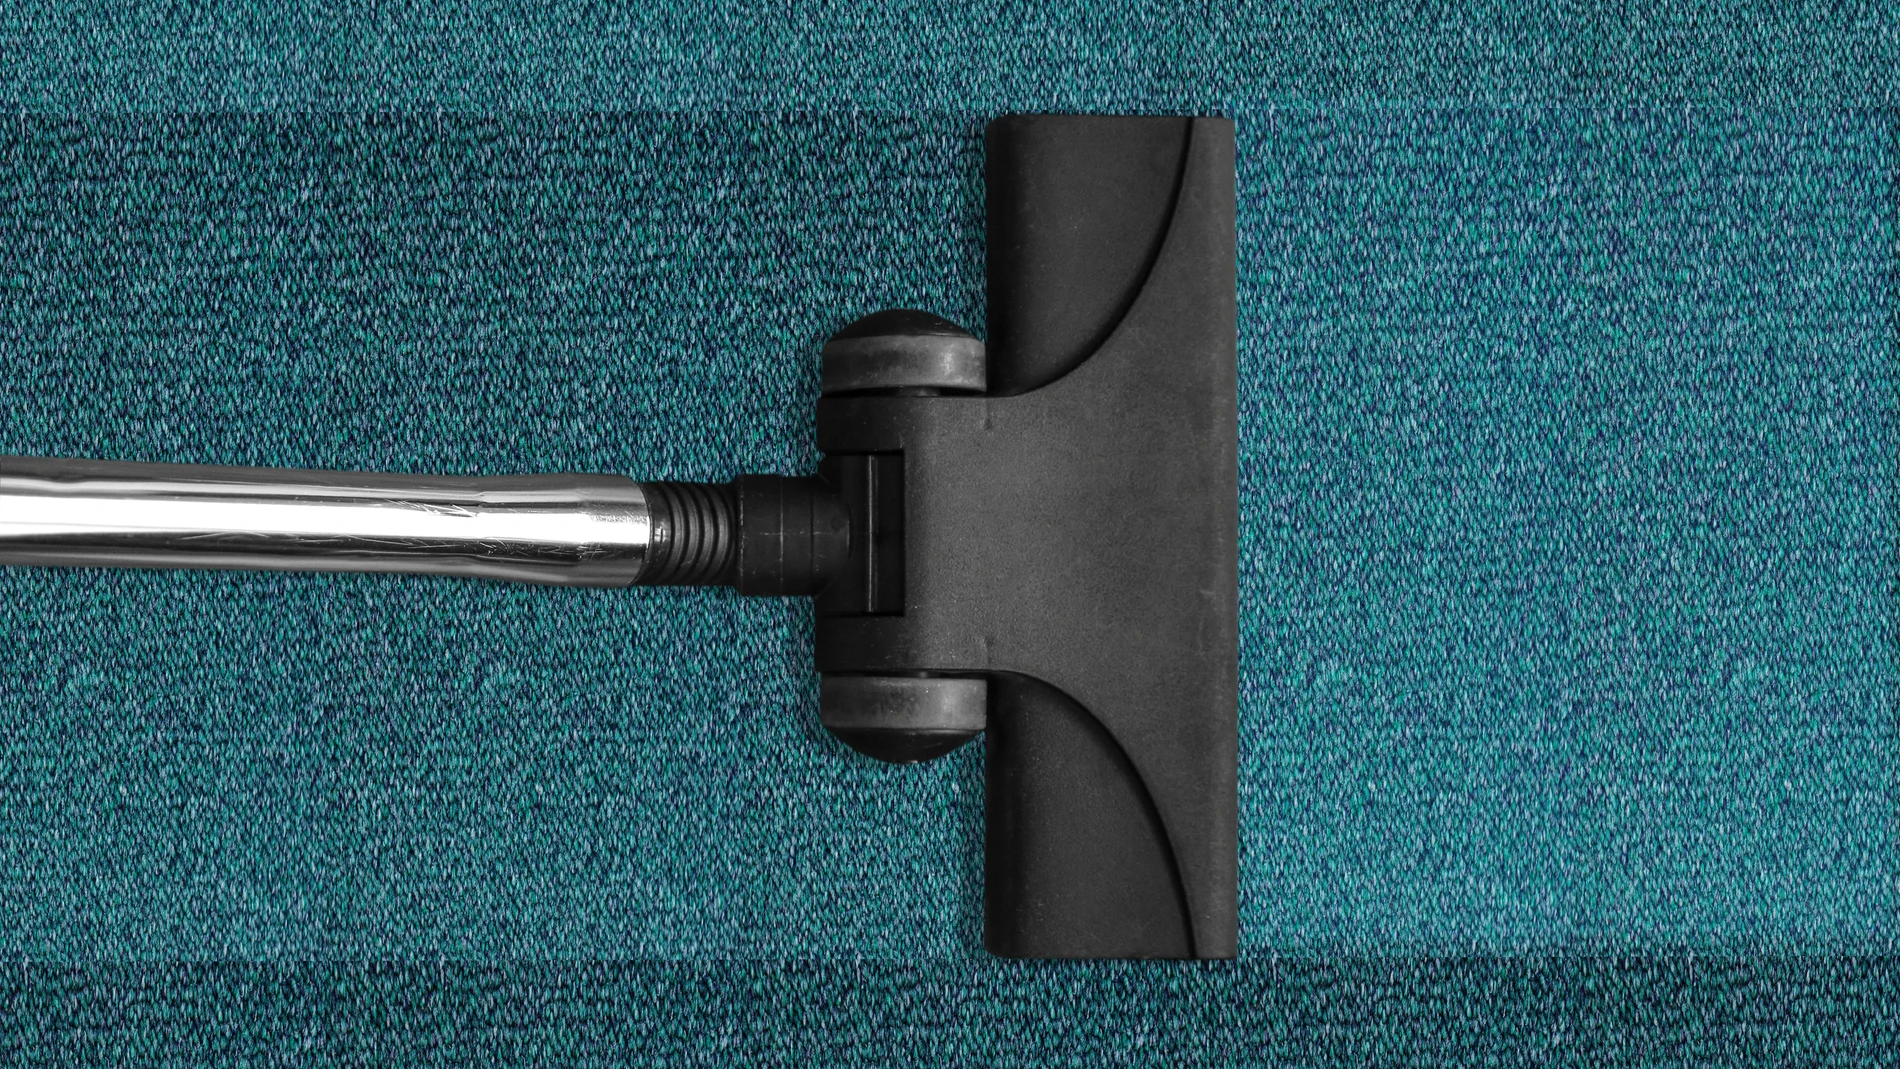 Cómo debemos limpiar las alfombras, paso a paso | Fuente: Pixabay / Michal Jamoluk